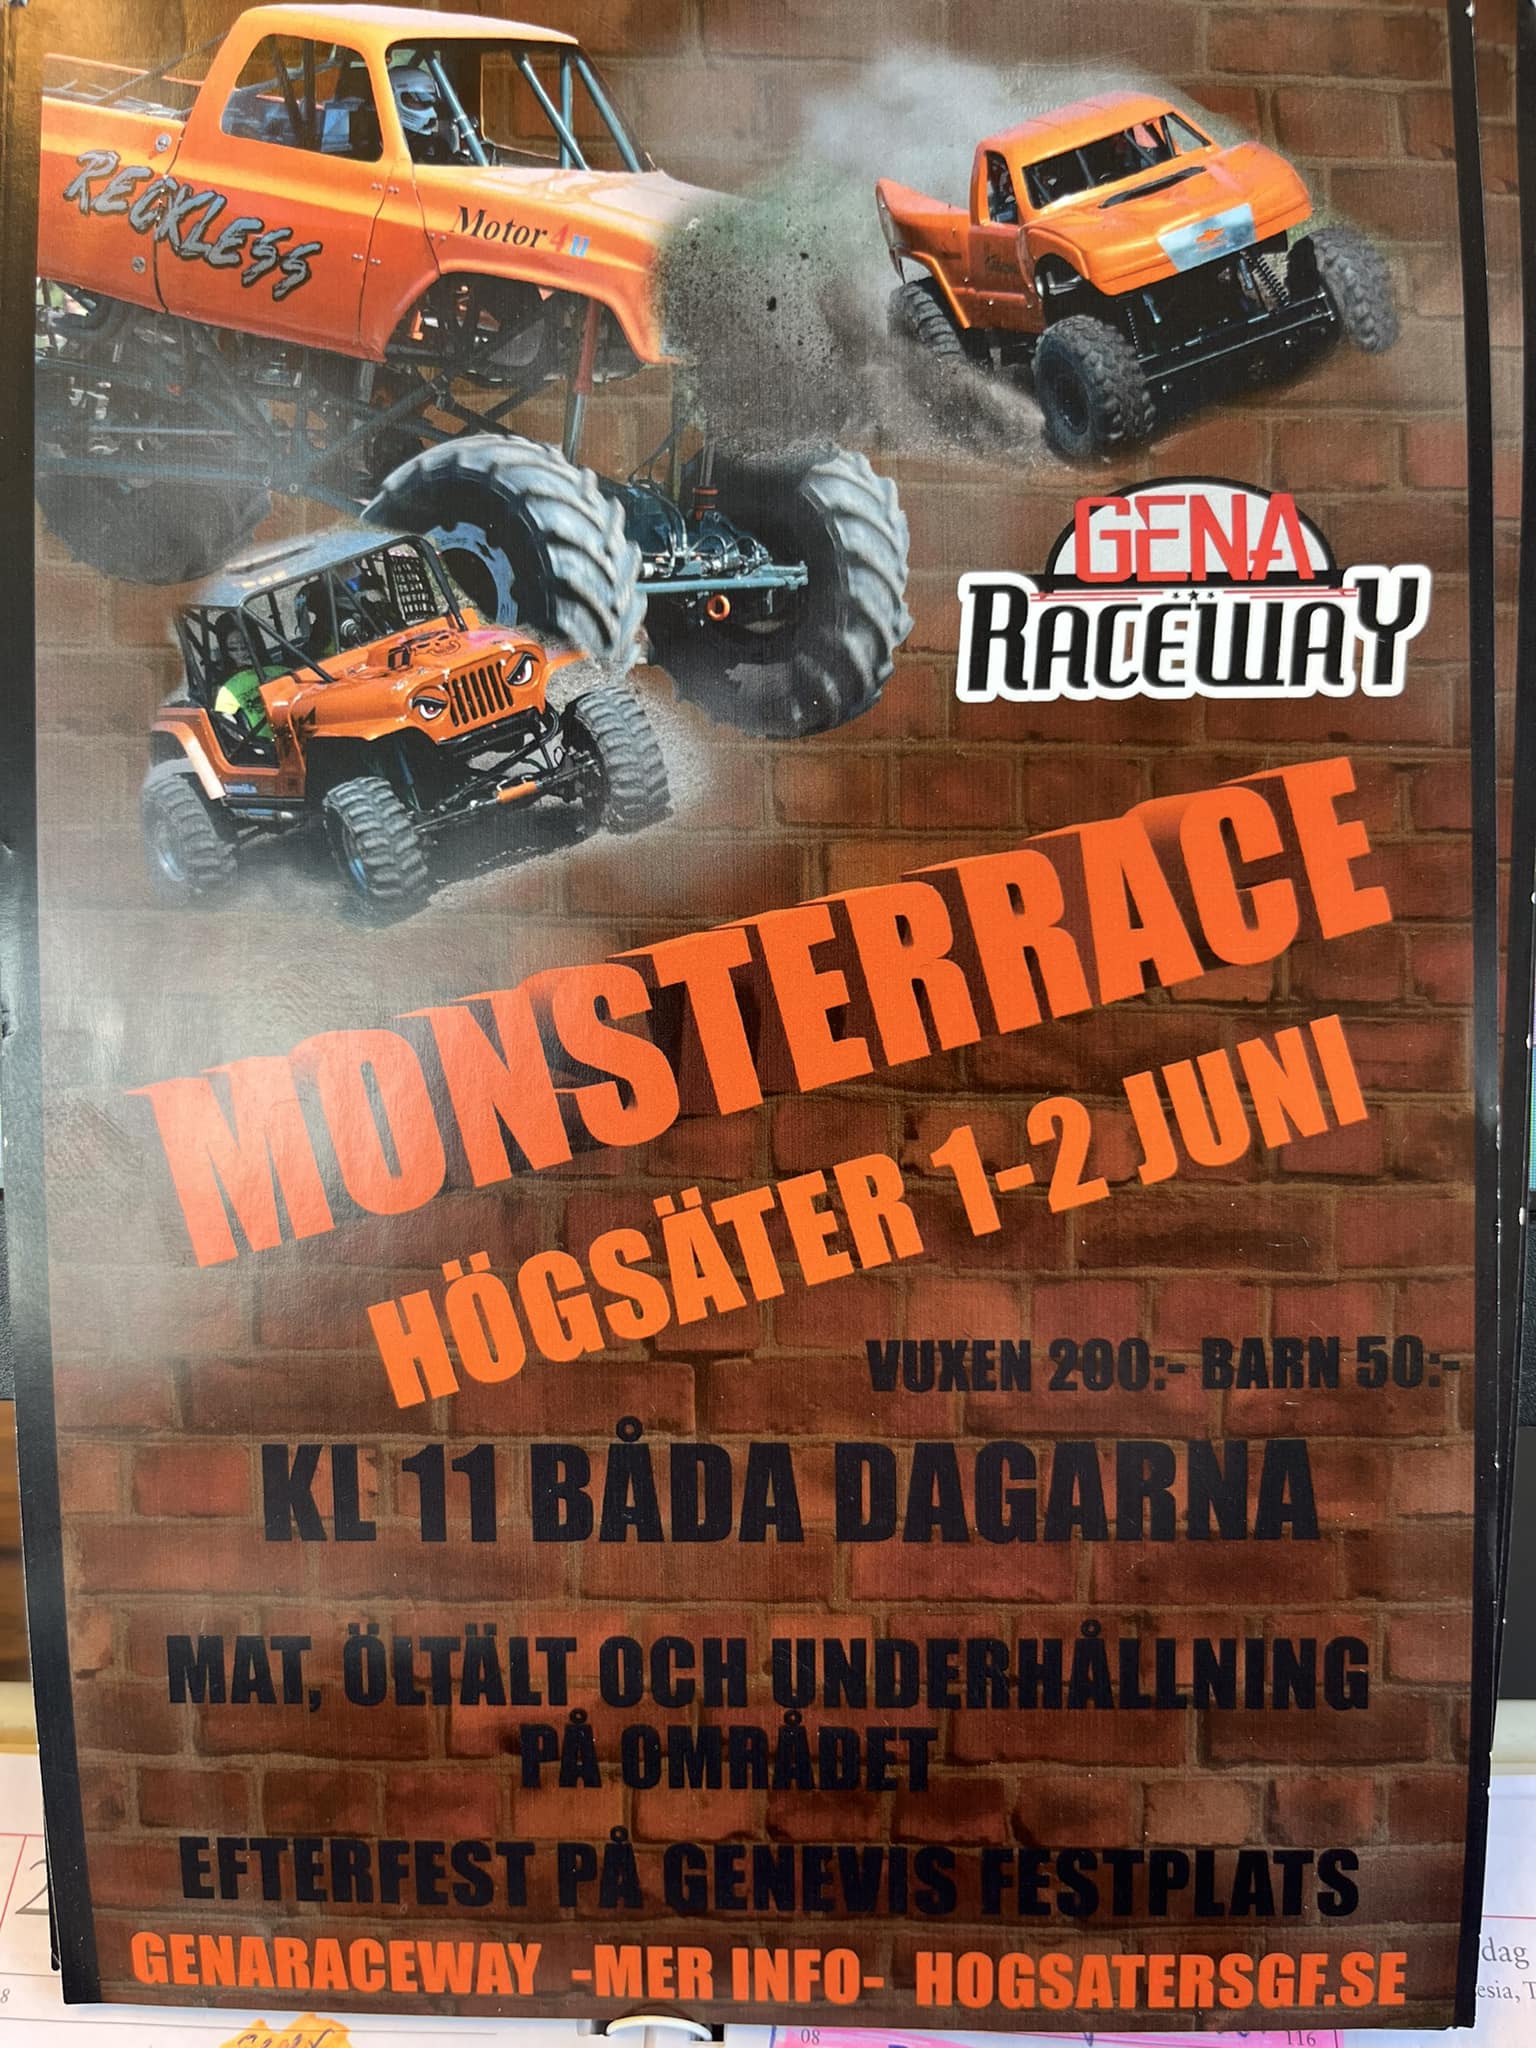 2024 - Monsterrace Cup deltvling 1 och 2